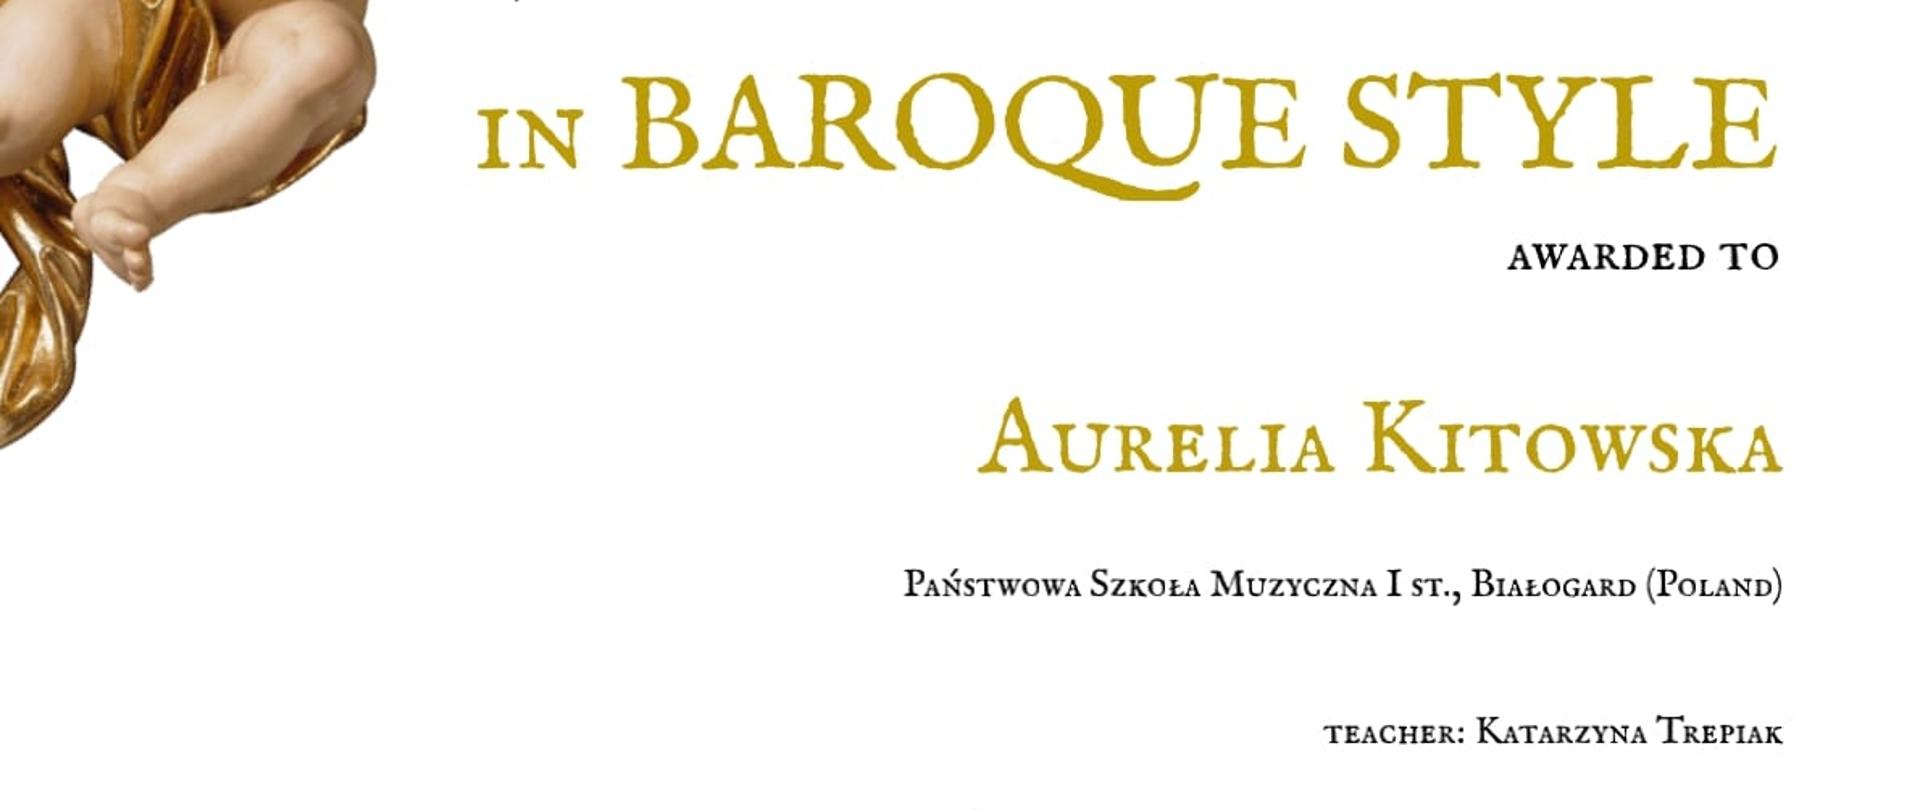 Dyplom z konkursu "W barokowym stylu" dla Aurelii Kitowskiej